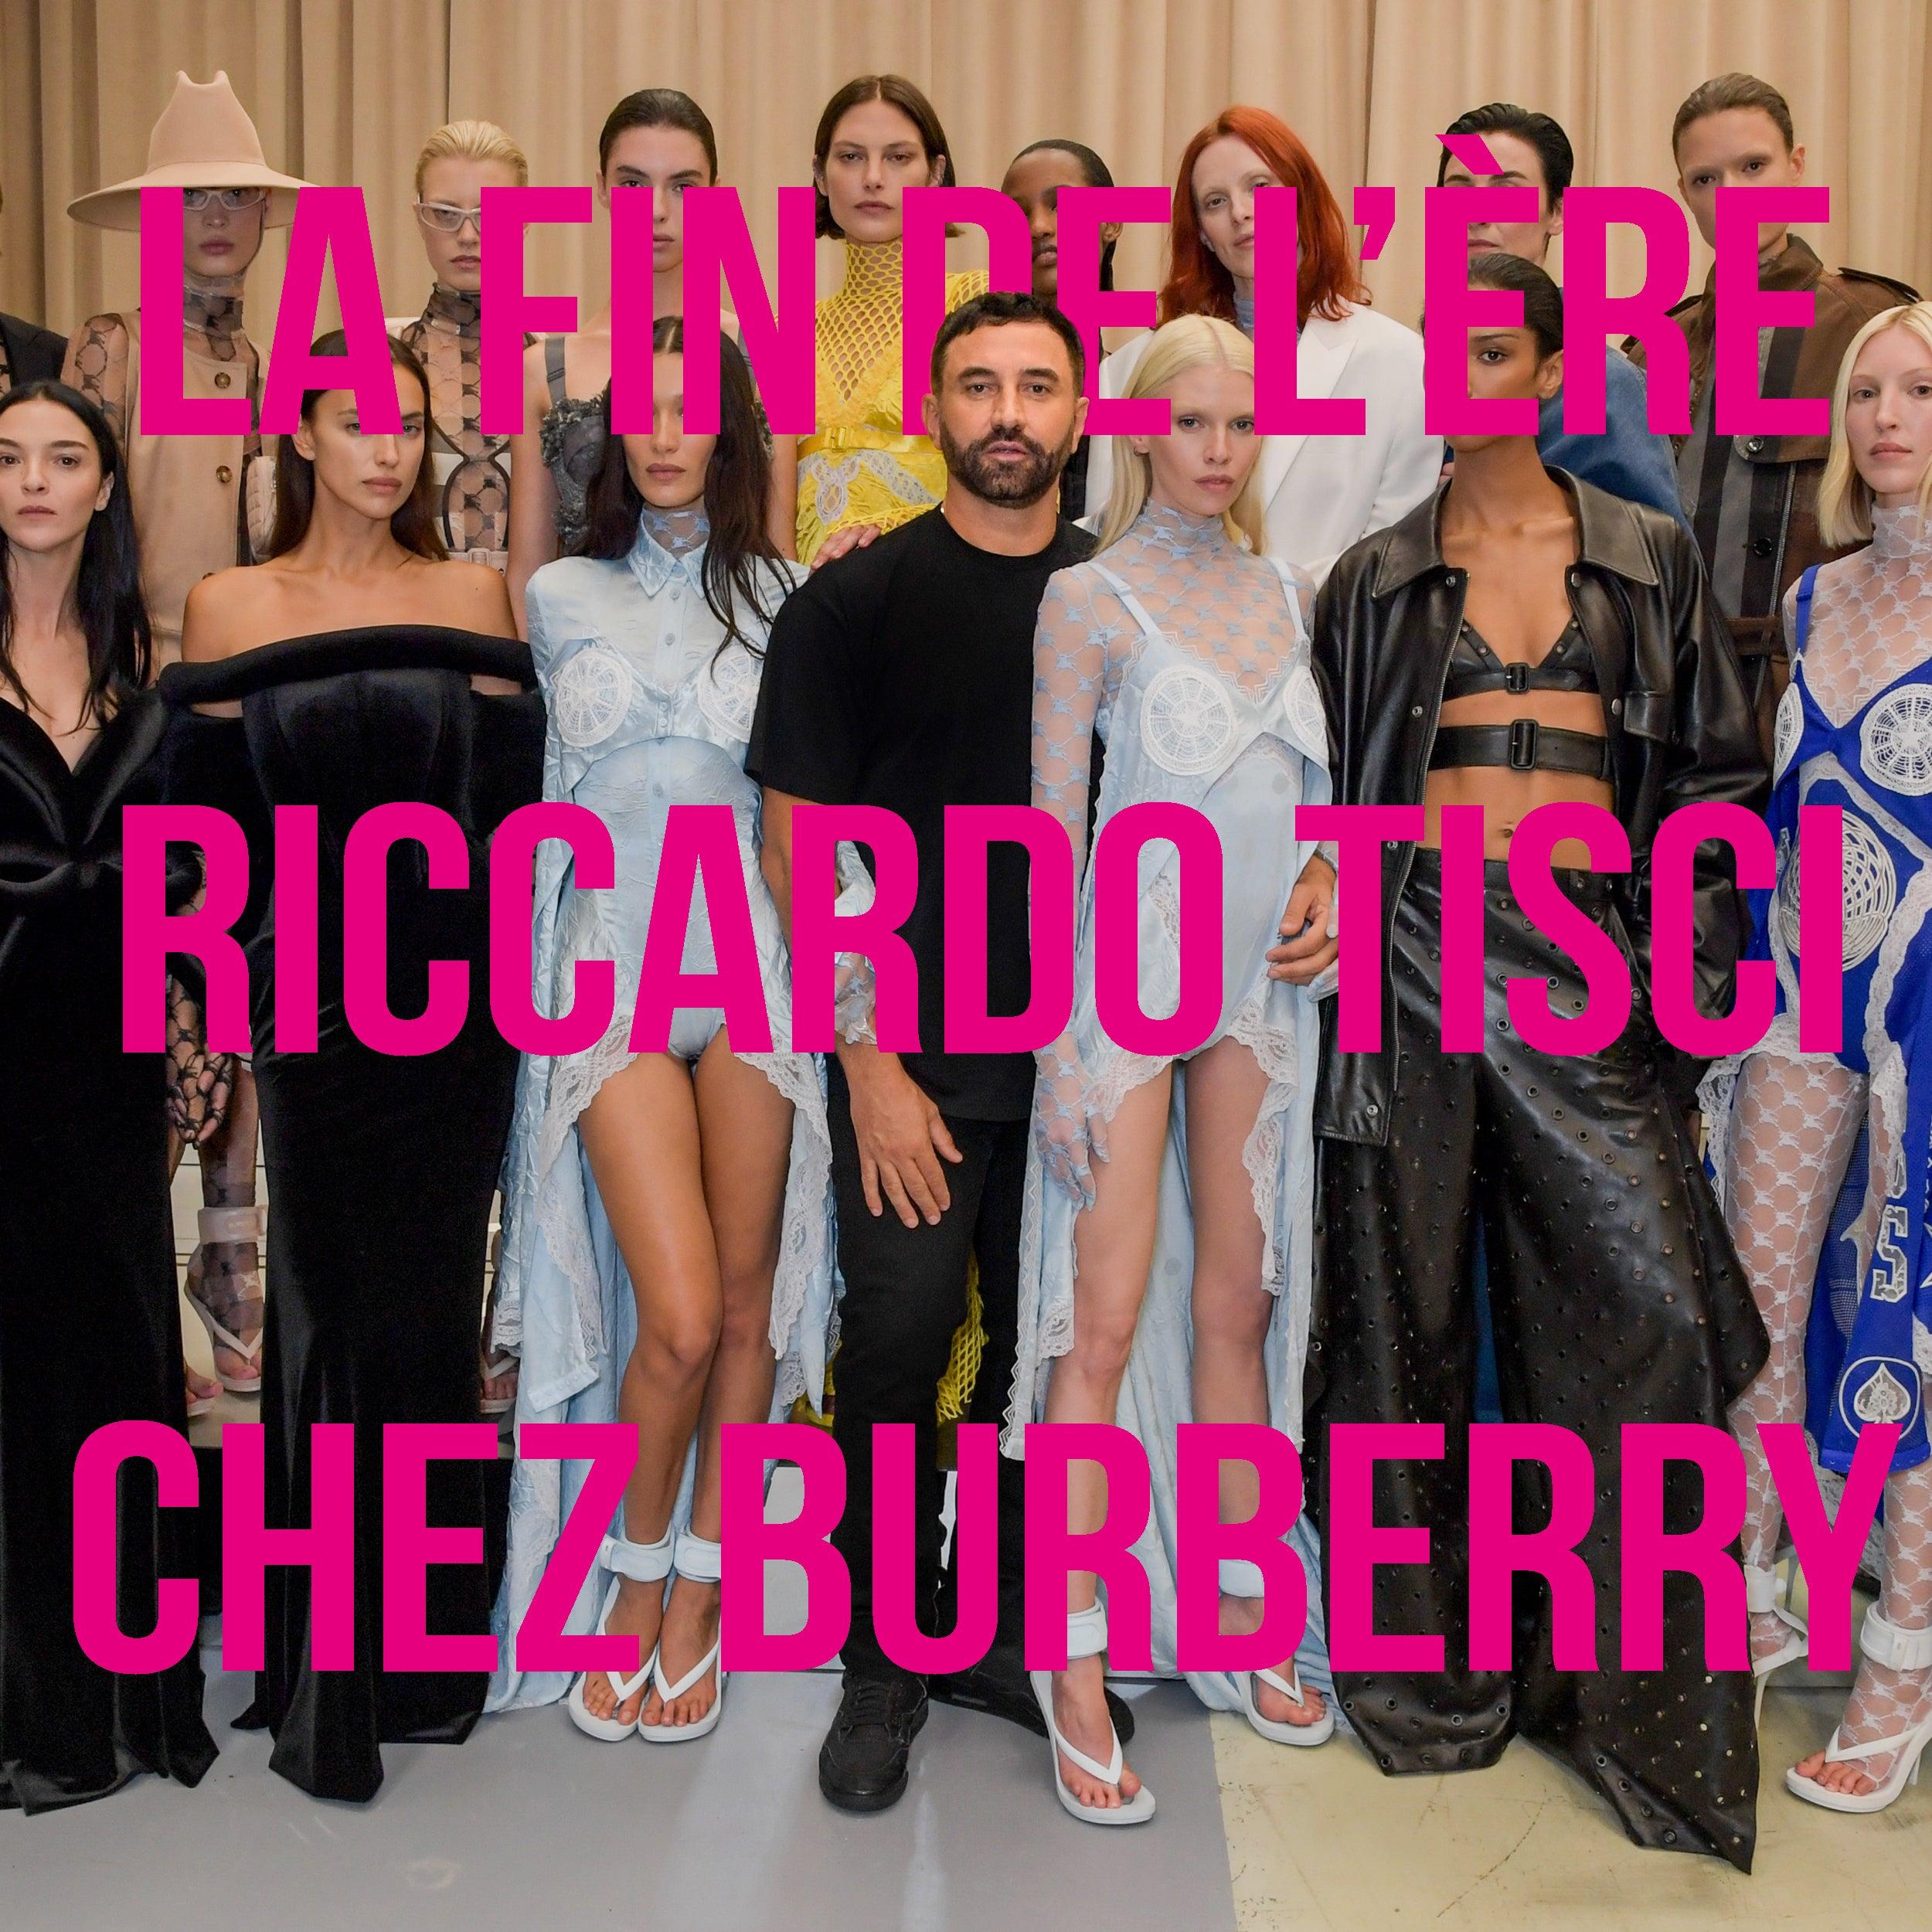 La fin de l'ère Riccardo Tisci chez Burberry - Lesthete